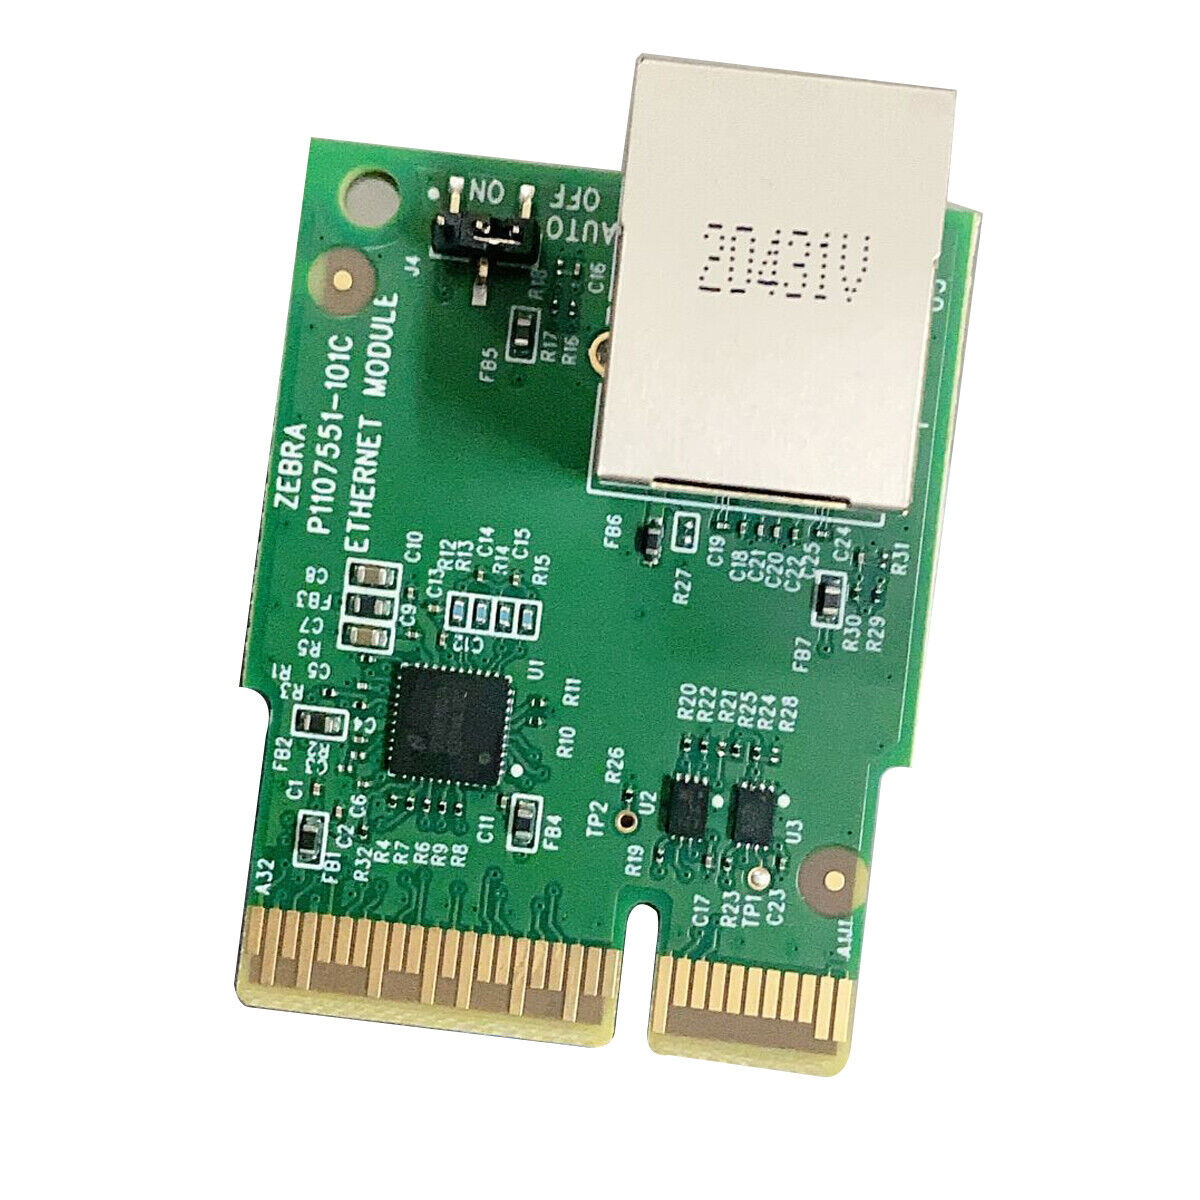 P/N: P1080383-442 original Kit Ethernet Module for Zebra ZD410 ZD420 ZD420C/D/T 